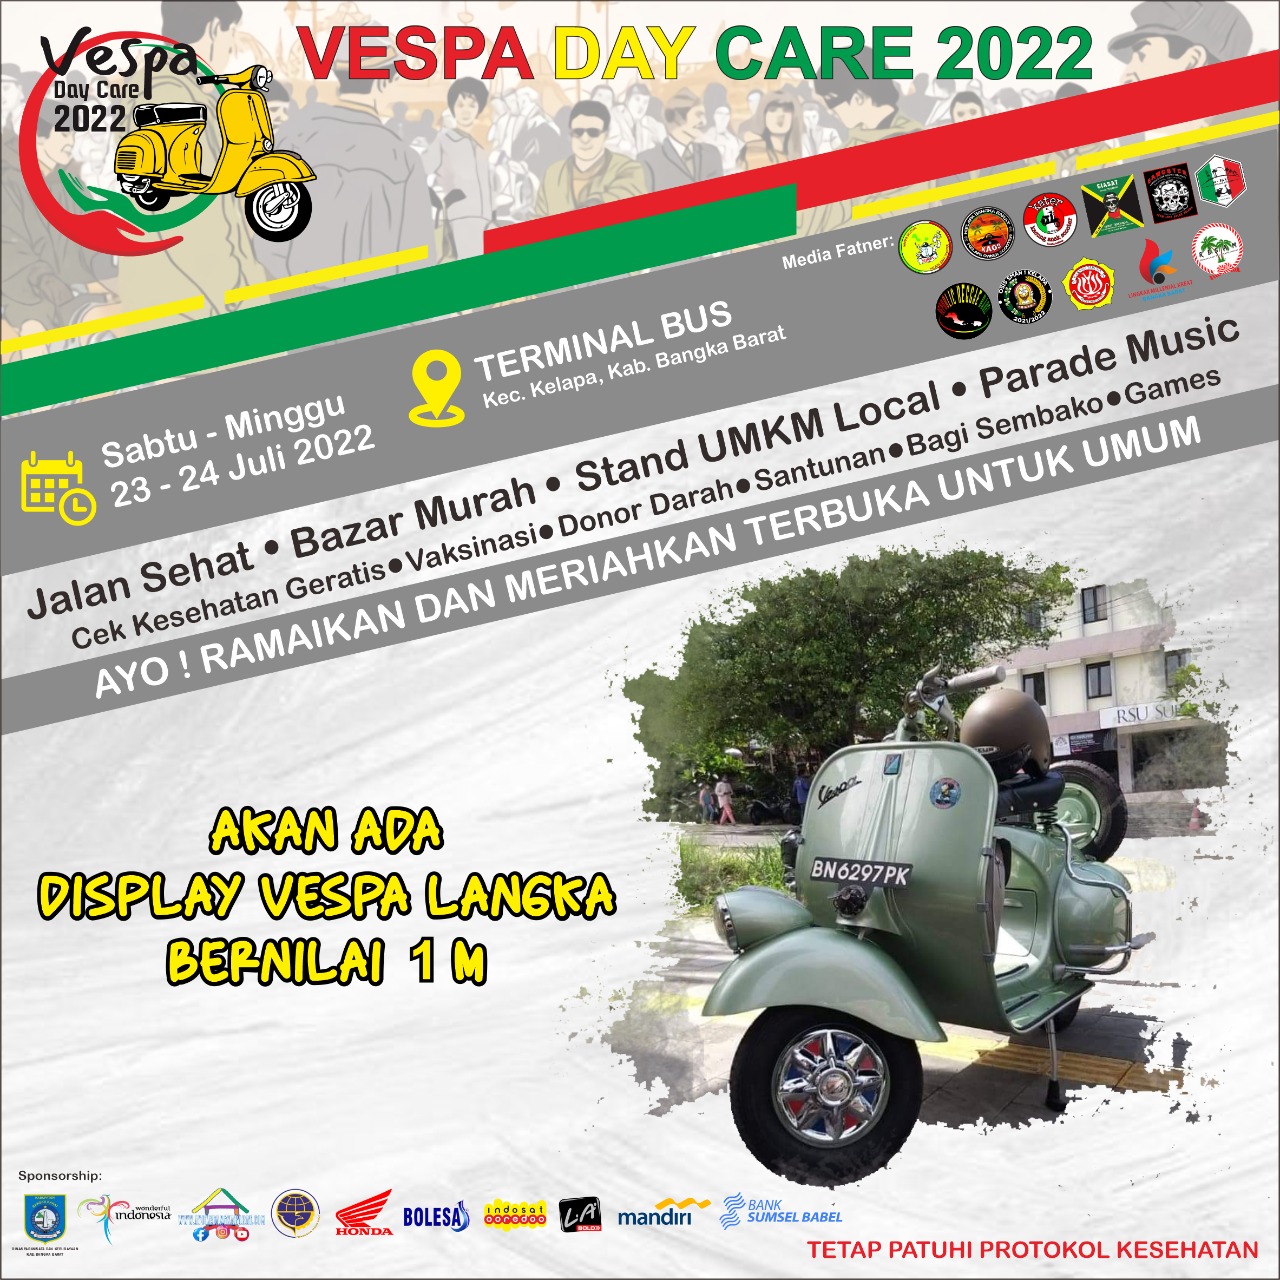 VESPA DAY CARE 2022 (4)